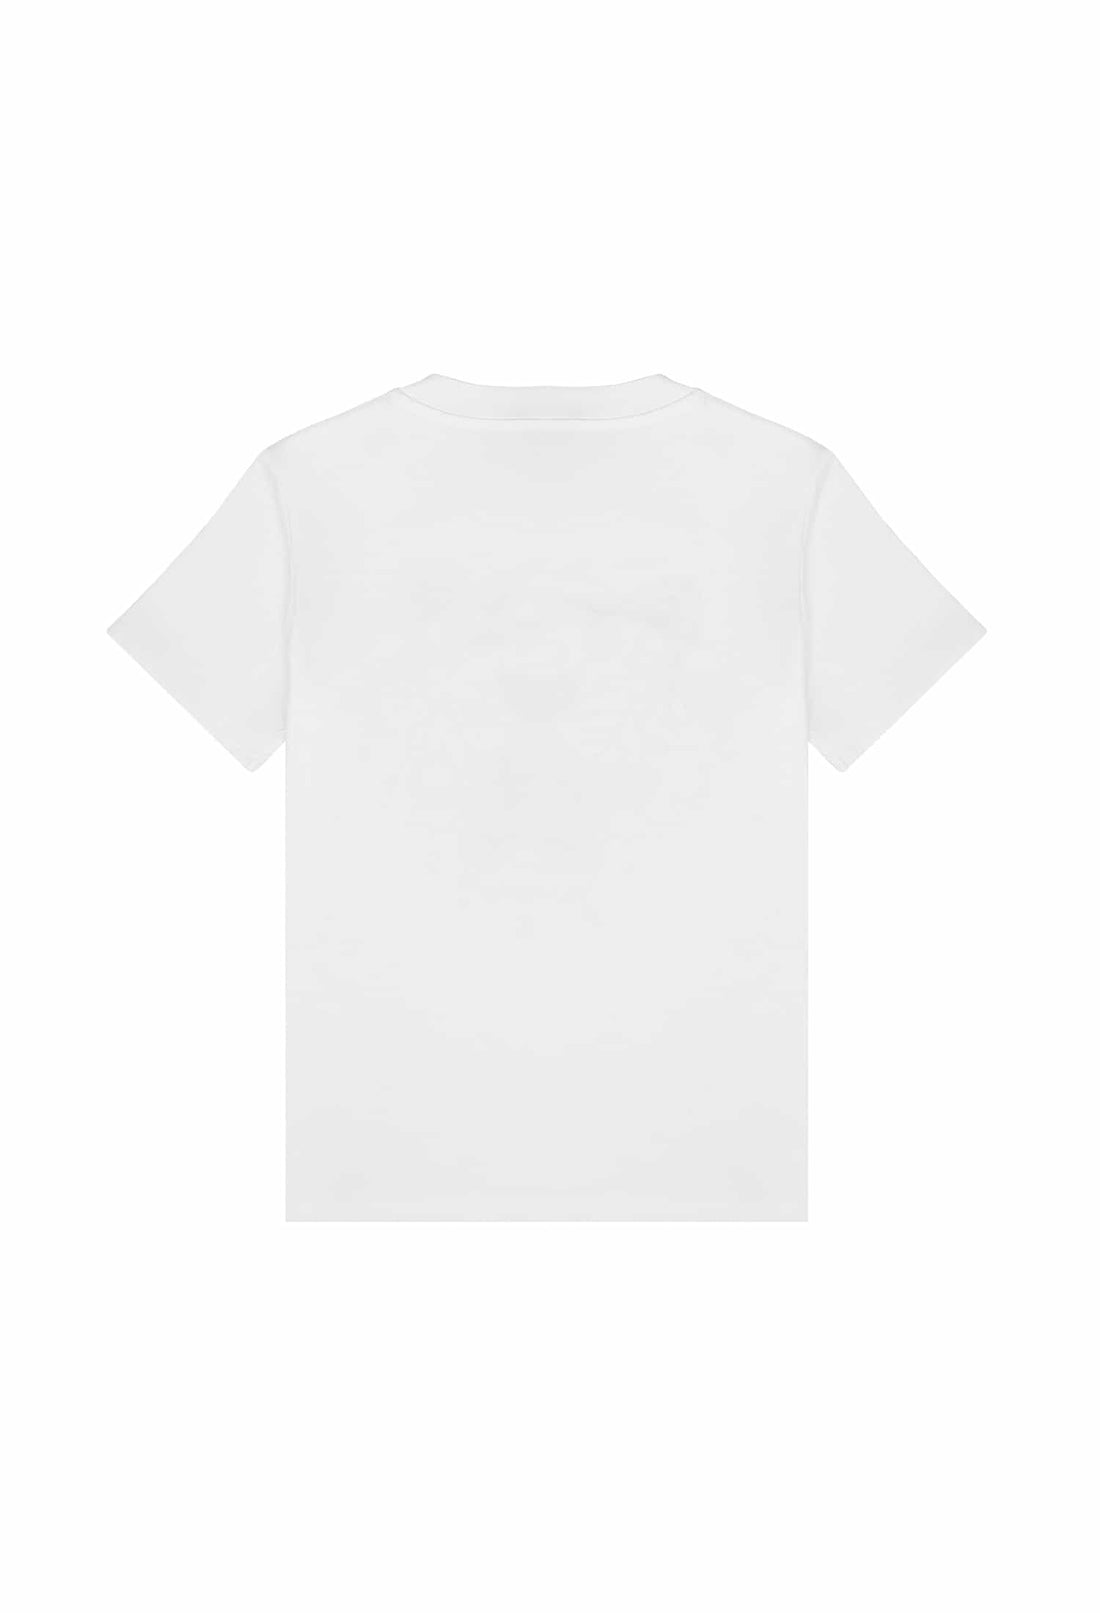 Koszulka biała z nadrukiem Kenzo KENZO KIDS 123 K25802 123/91c